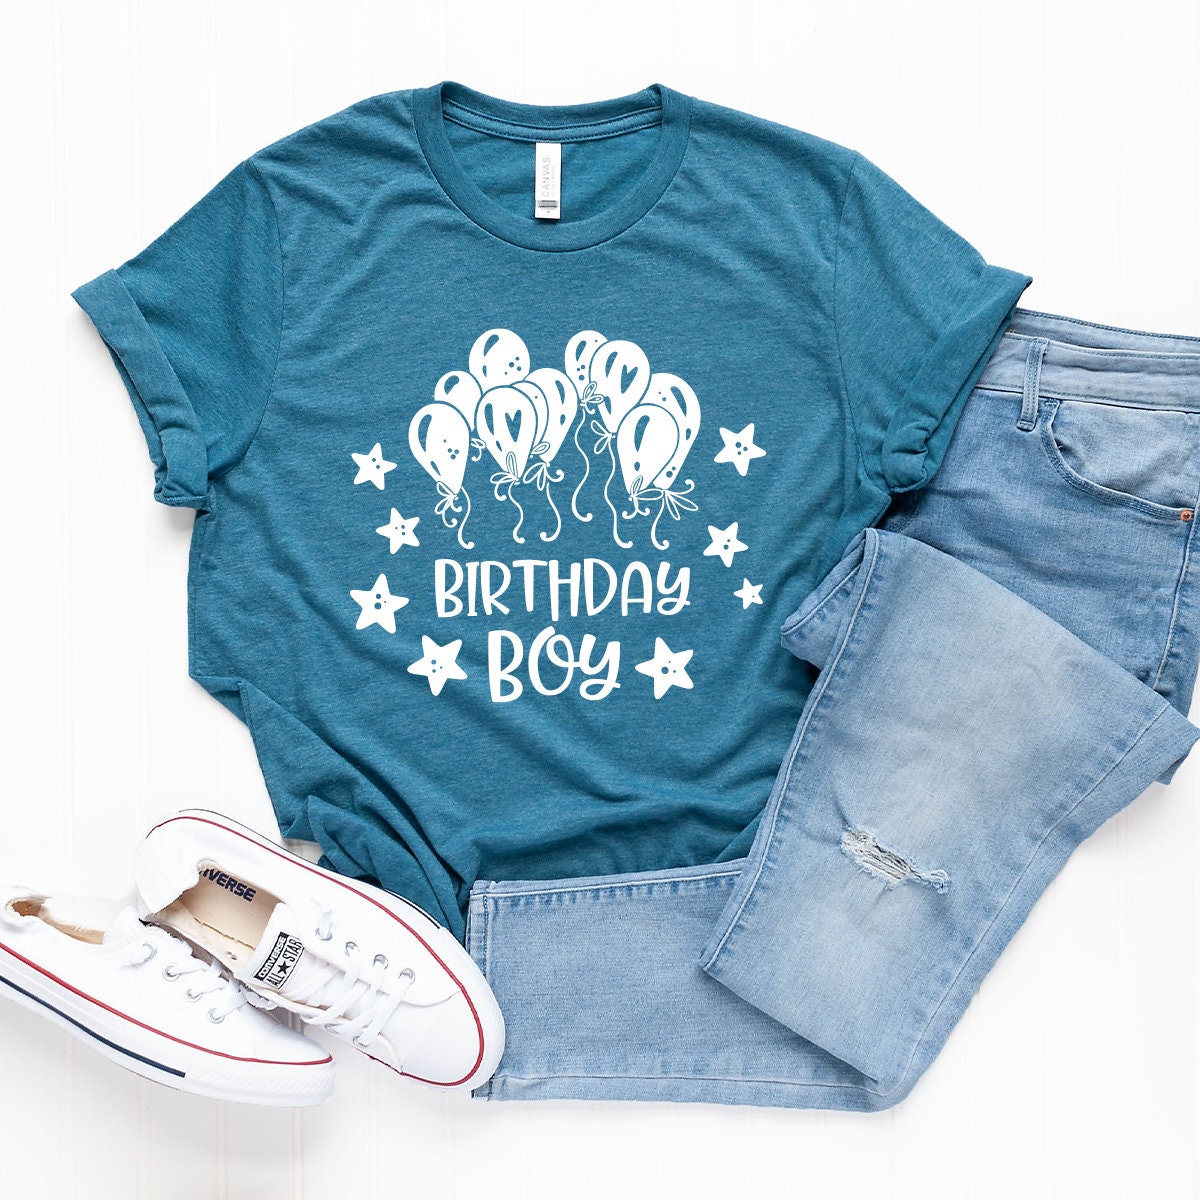 Boy Birthday T Shirt, Shirt For Boy, B-Day Shirt, B'Day Shirt, Toddler Boy Birthday Tee, Kids Birthday Shirt, Funny Boy Birthday Shirt - Fastdeliverytees.com